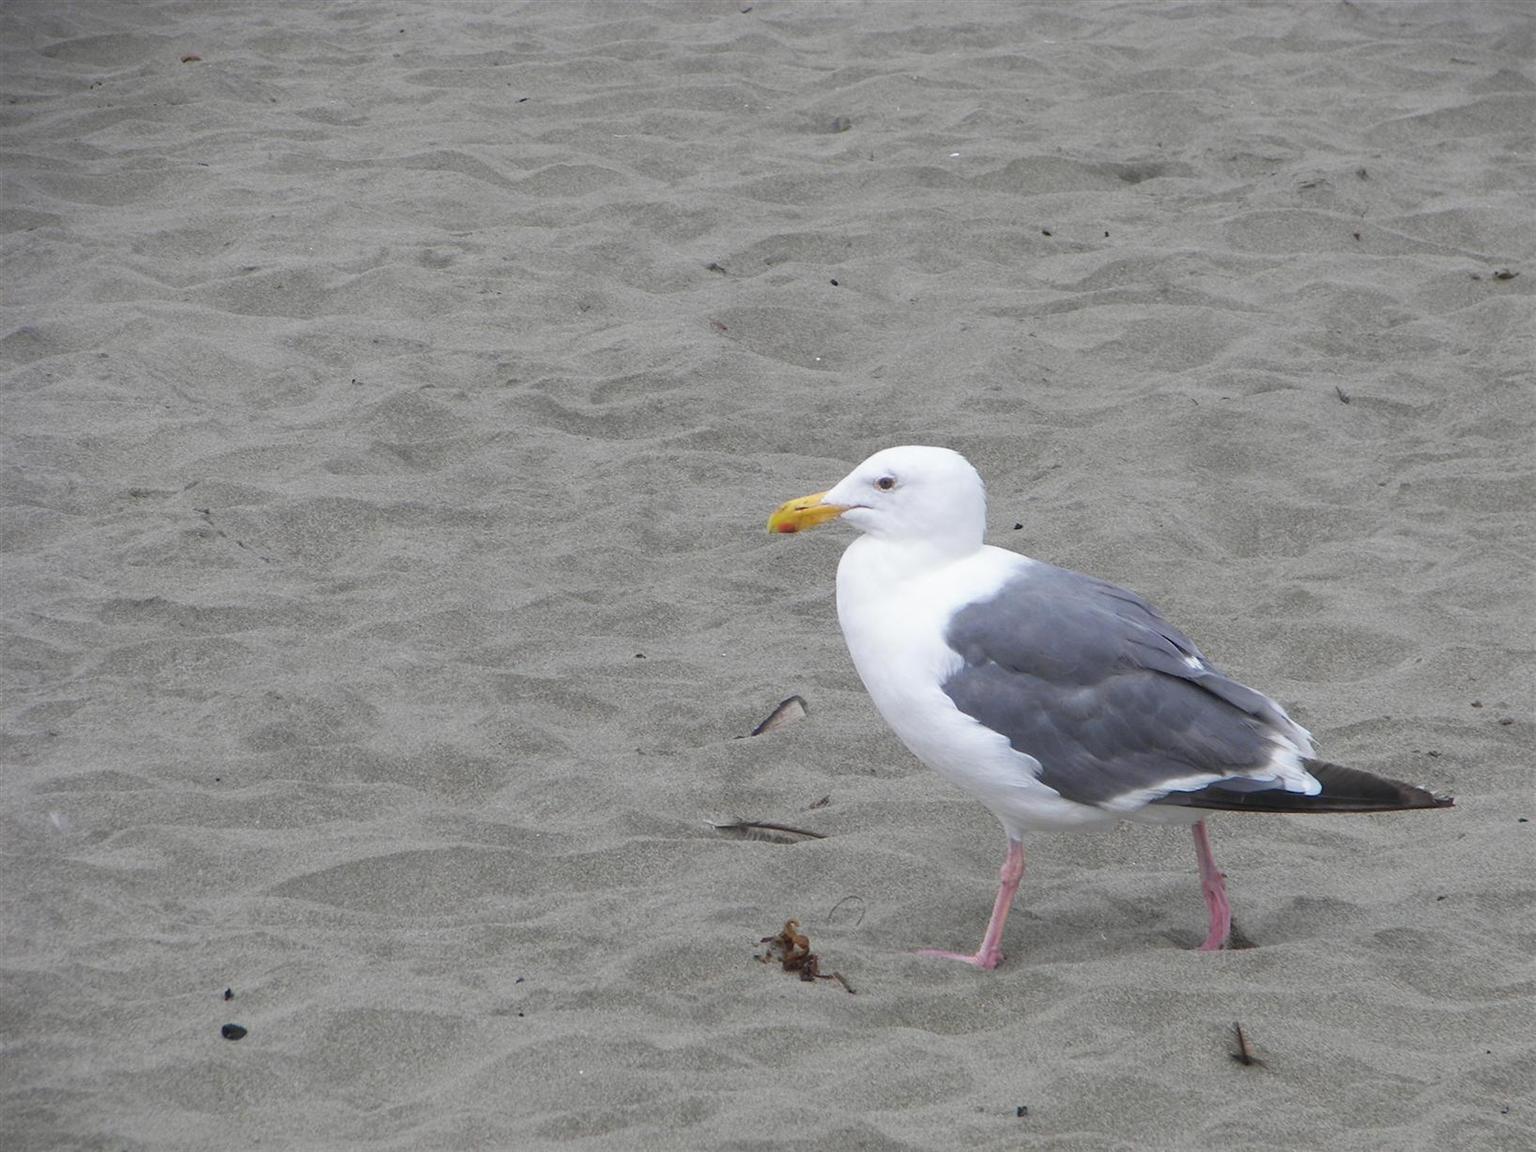 Bird on shore of Pacific Ocean near San Francisco